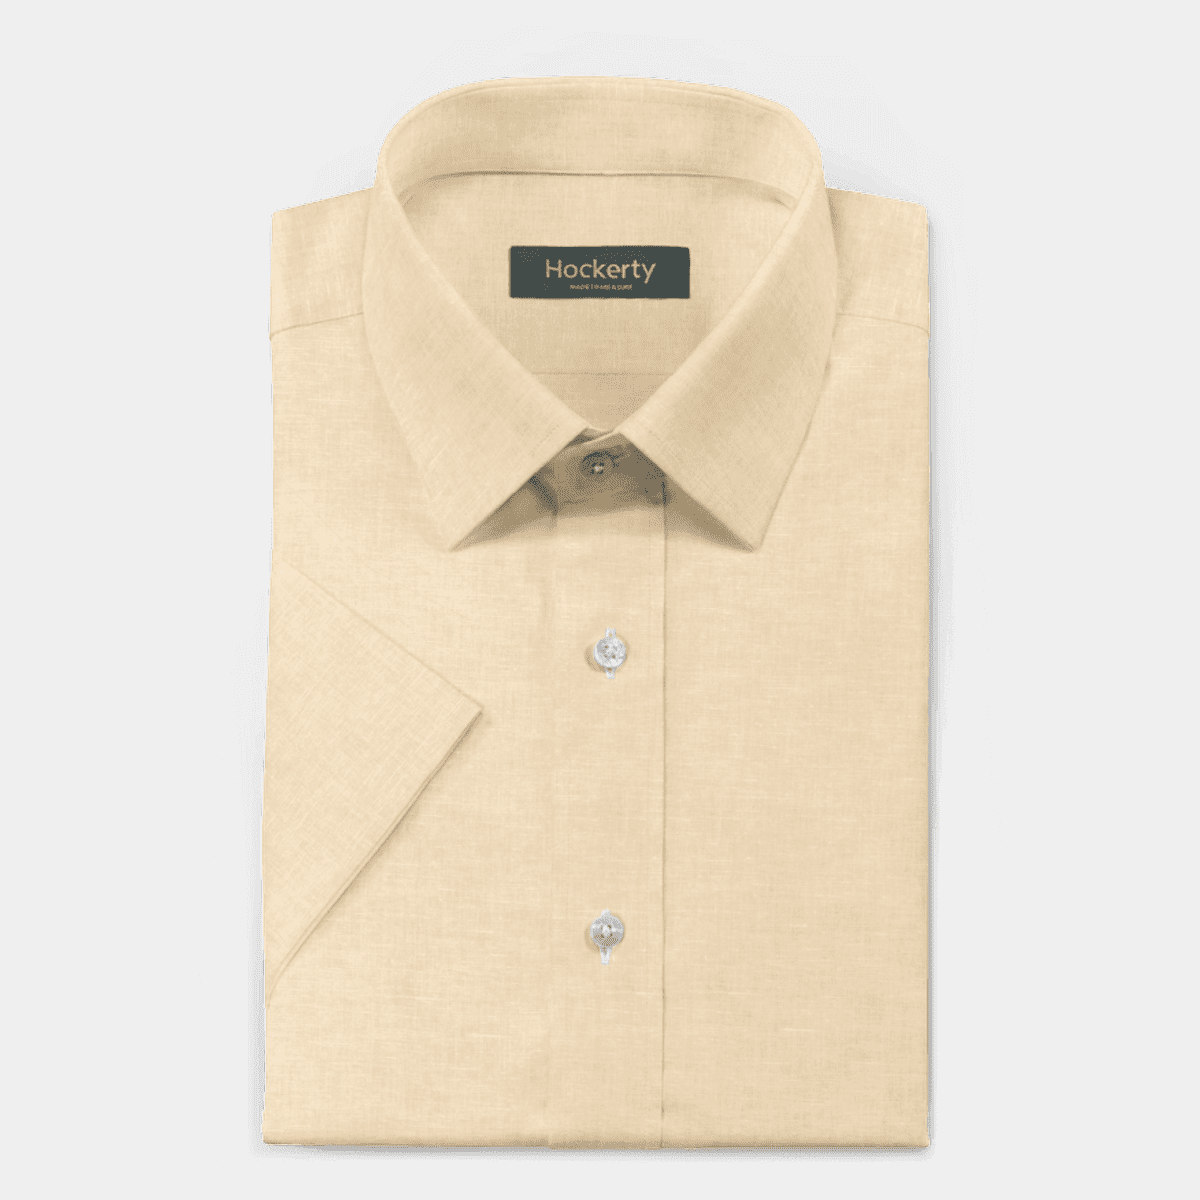 Yellow short sleeved no-collar linen-cotton Dress Shirt - loose